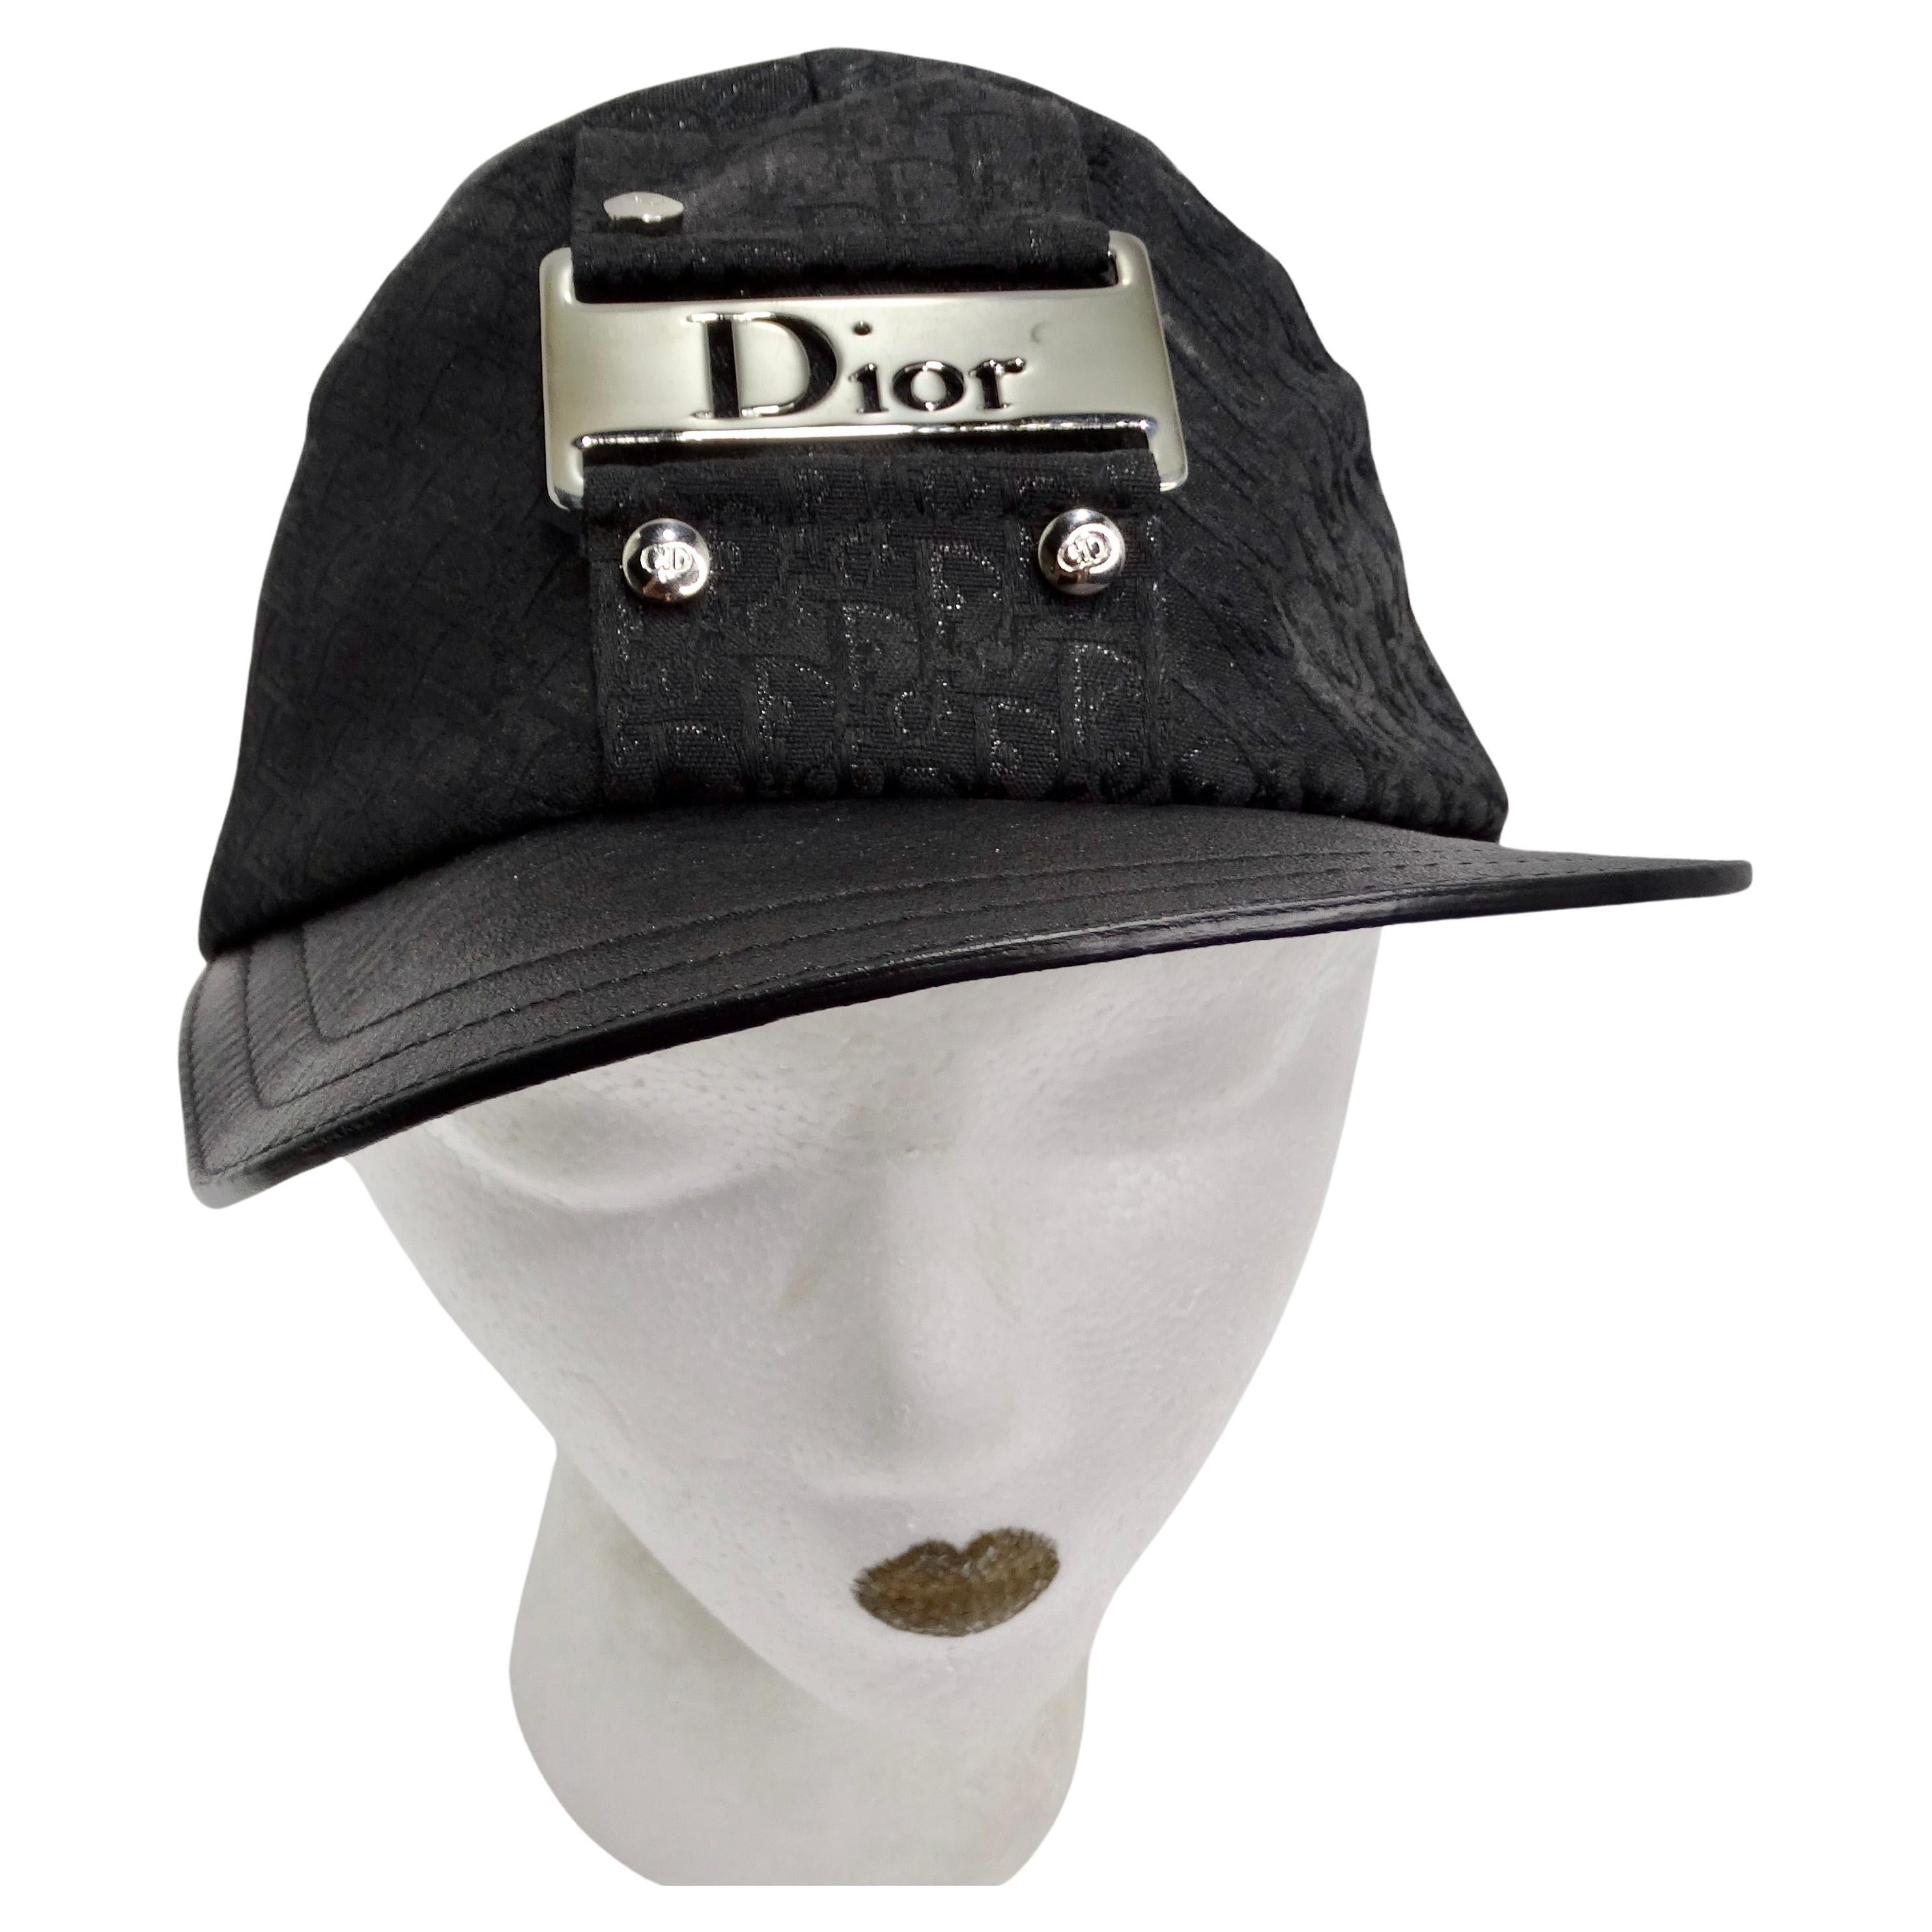 Wir präsentieren die Christian Dior by John Galliano 2002 Trotter Monogram Baseball Cap, ein zeitloses und ikonisches Accessoire, das Luxus und Stil verkörpert. Dieser Hut im Baseball-Stil ist mit dem charakteristischen Dior Trotter-Monogramm aus